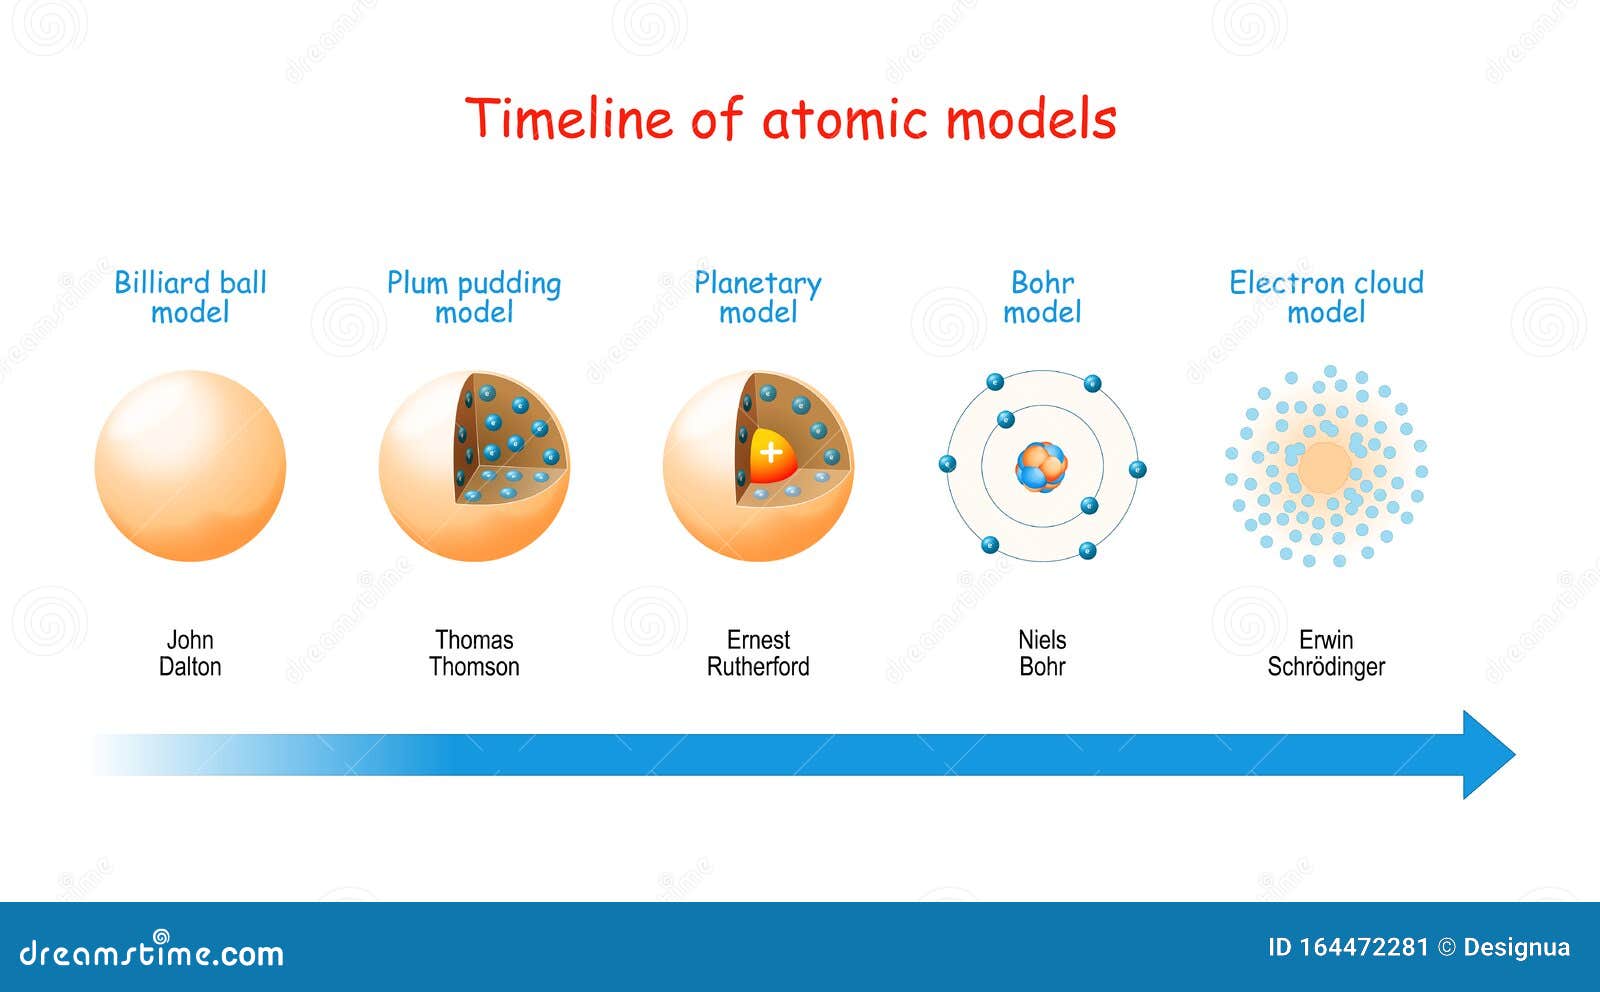 Linea Del Tiempo De Los Modelos Atomicos Timeline Timetoast Timelines ...